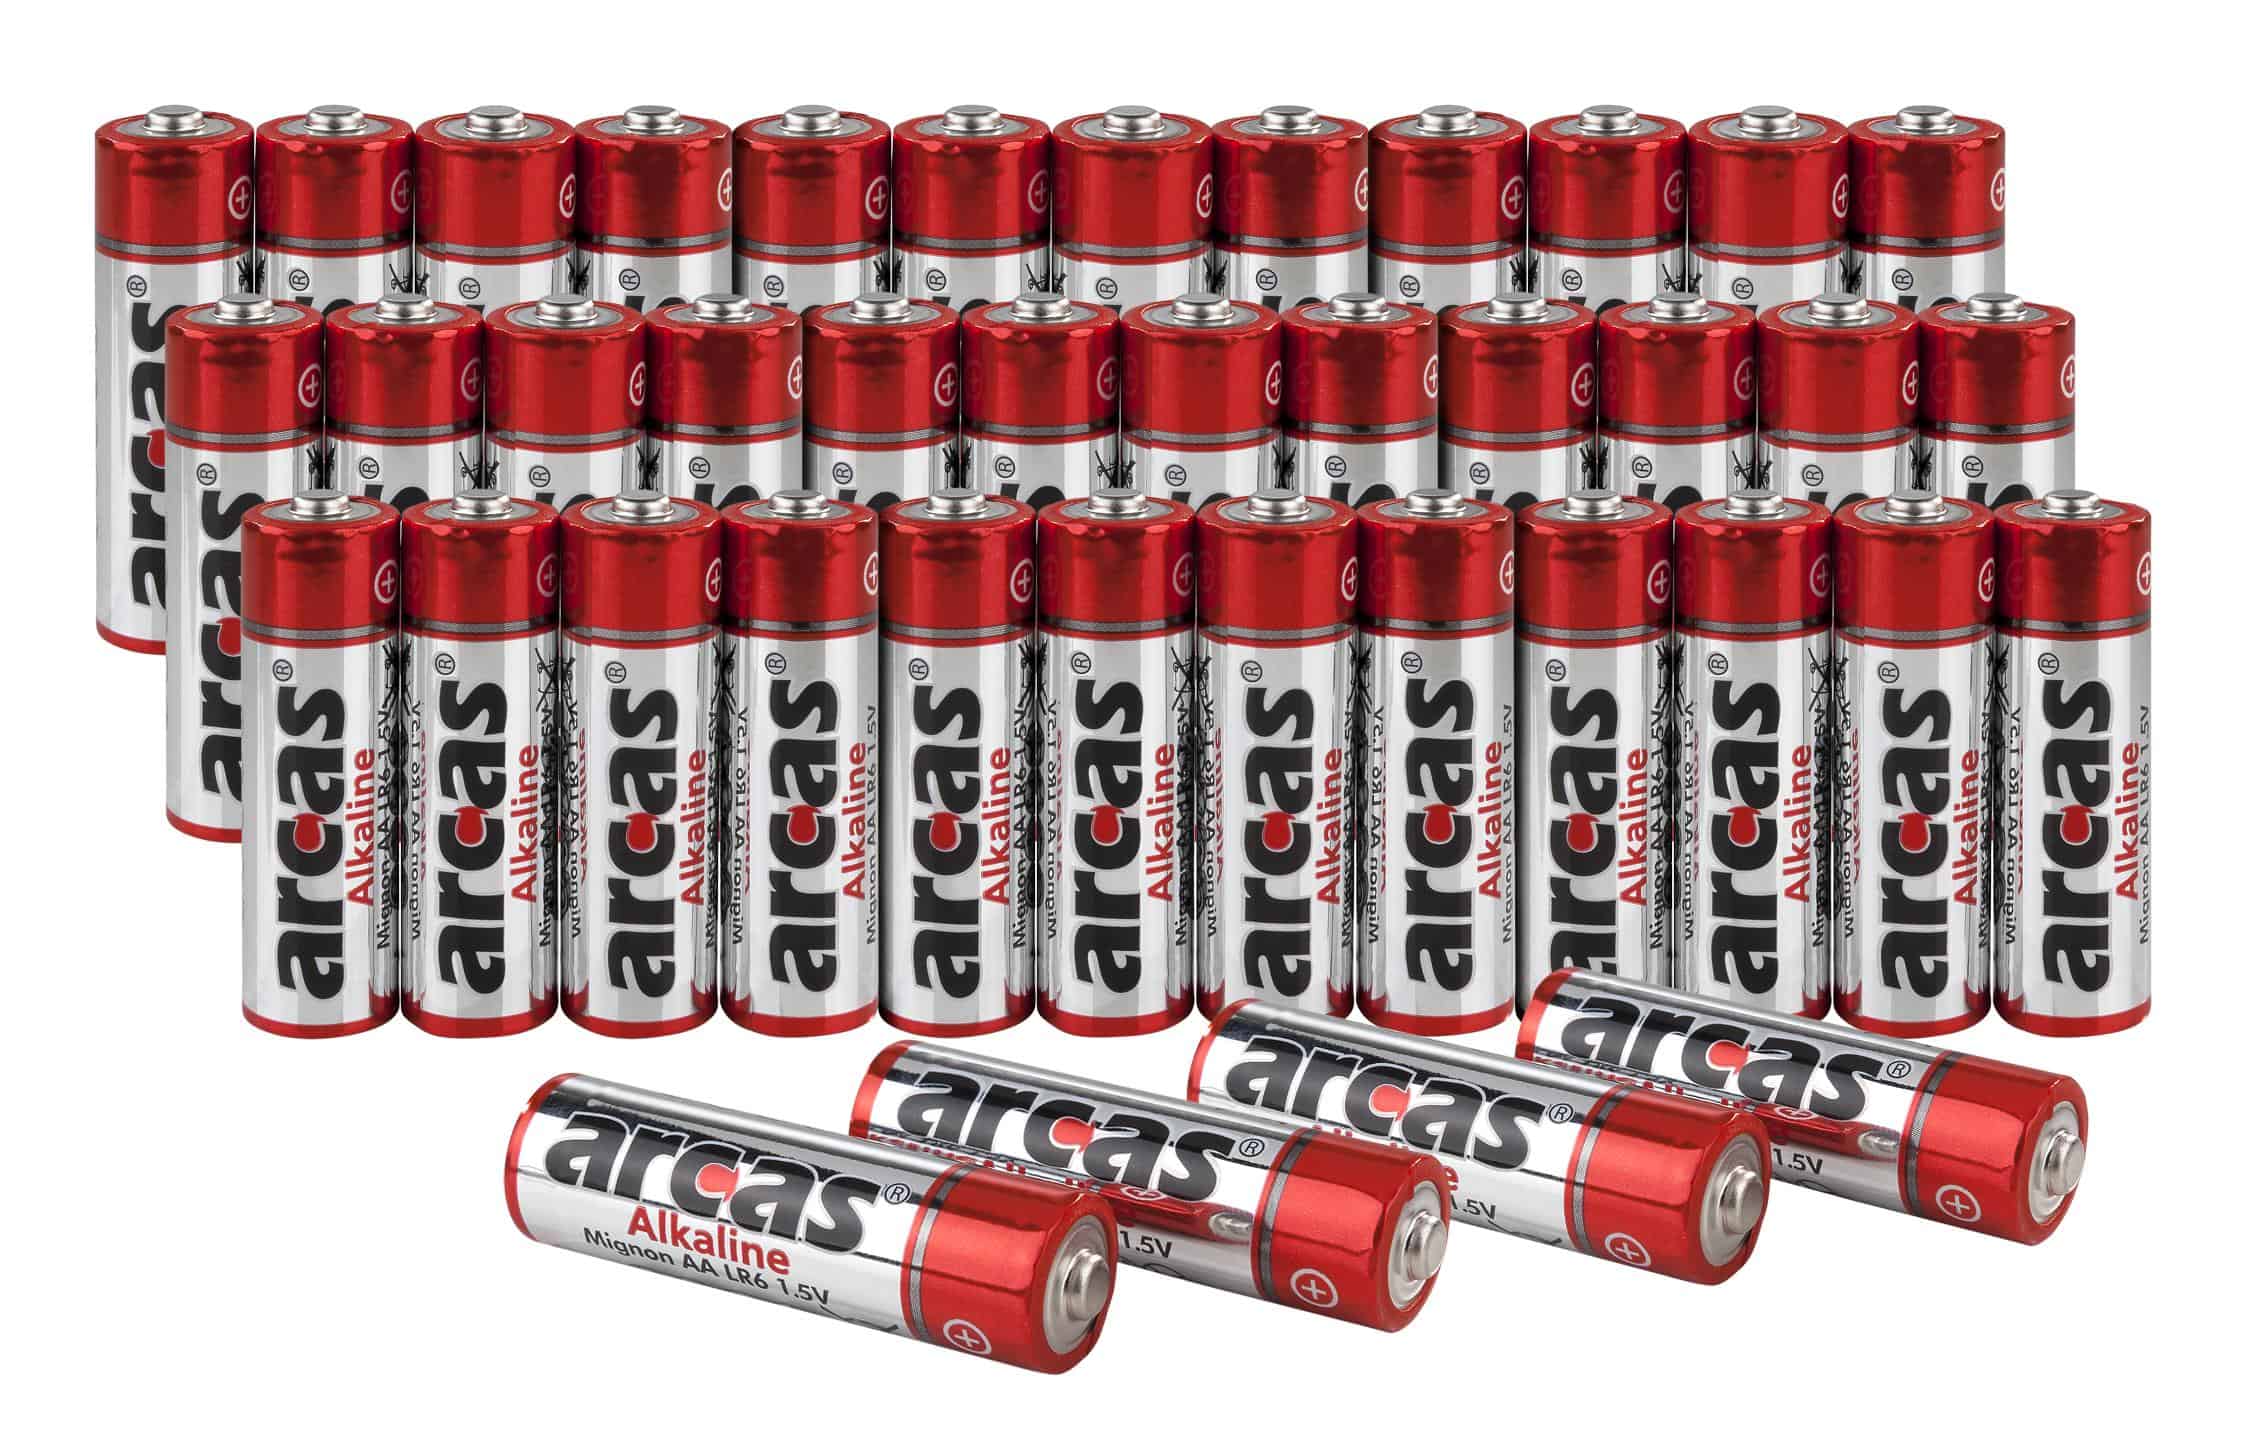 Arcas 32+4 Alkaline Batterie 32+4 - in verschiedenen Ausführungen